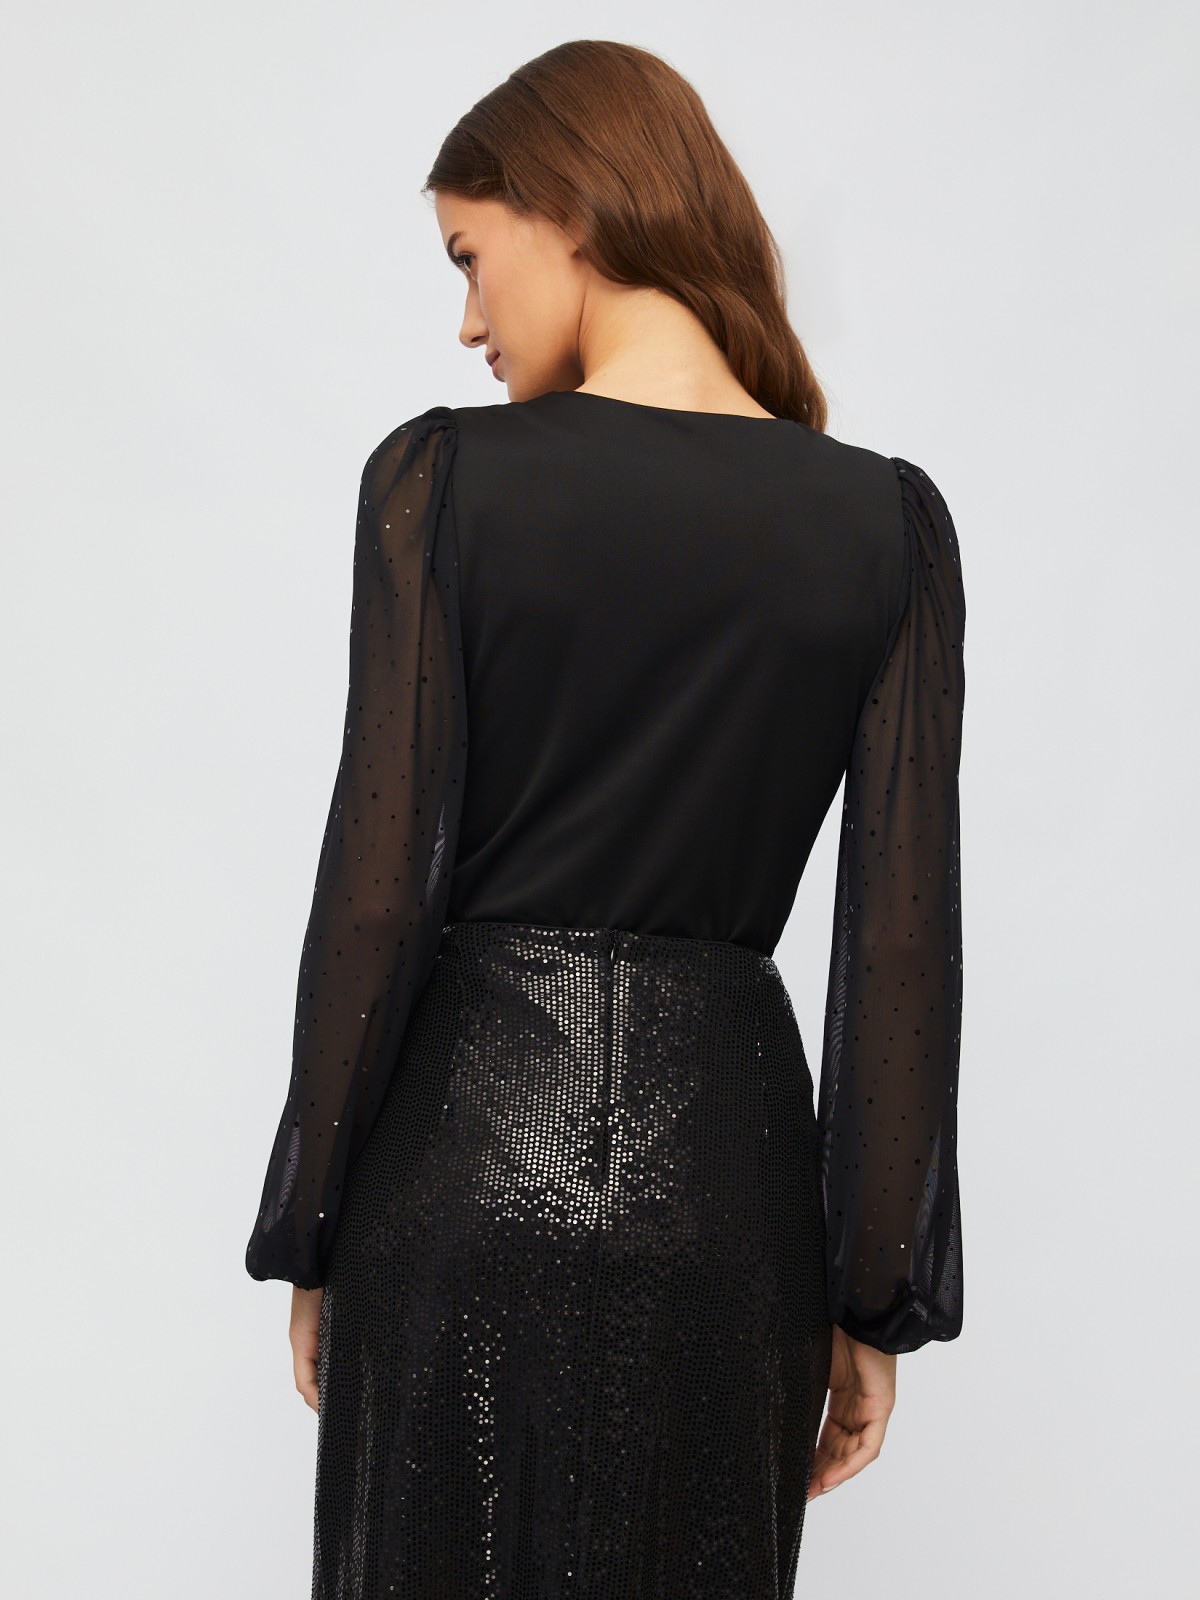 Блузка-боди с прозрачными рукавами из сетки со стразами zolla 023451159101, цвет черный, размер XS - фото 5